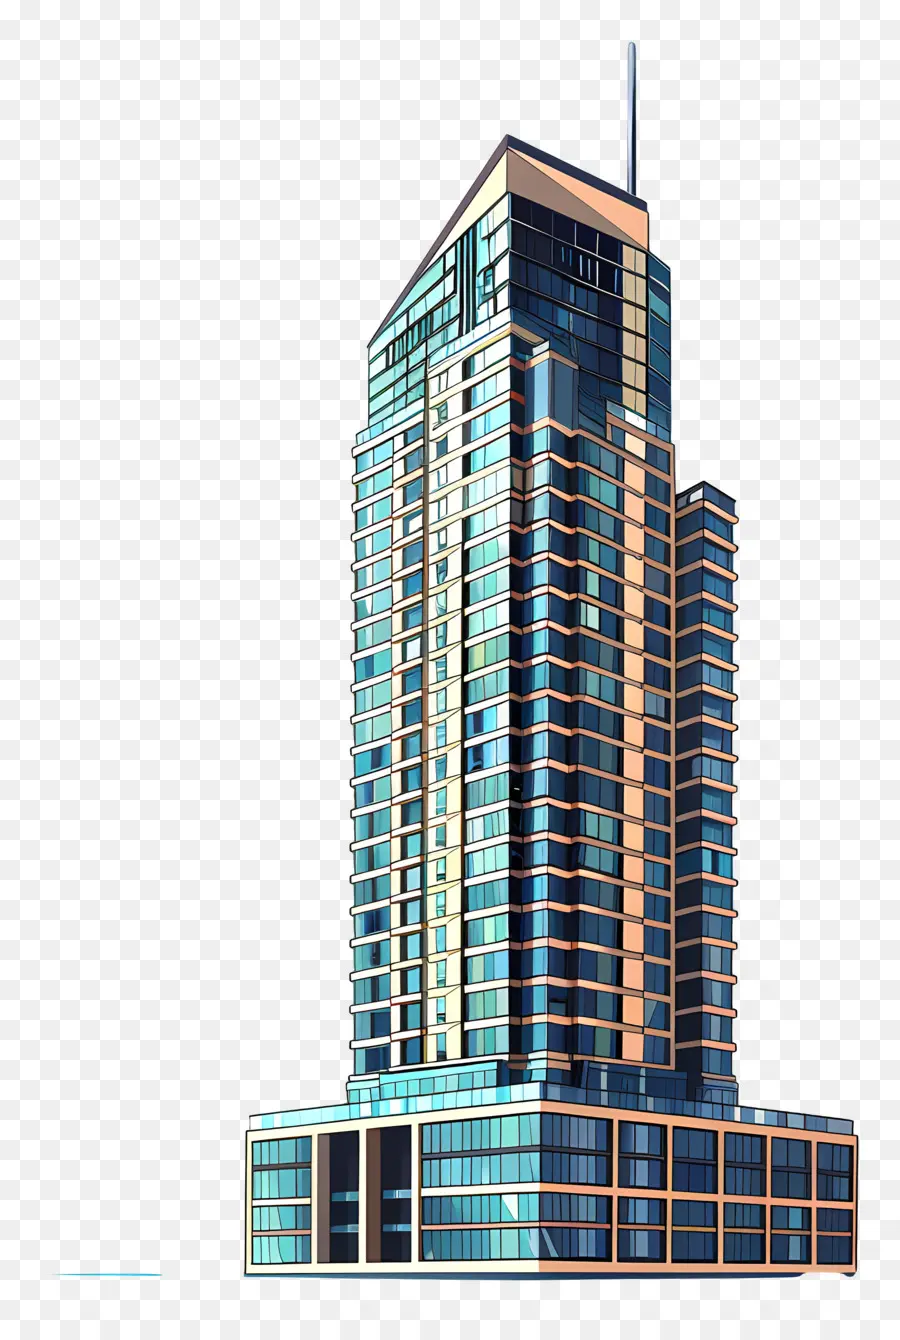 Wolkenkratzer Moderne Architektur Glasfassade Stahl und Betonblau Farbschema - Hoher, moderner Wolkenkratzer mit blauem Farbschema